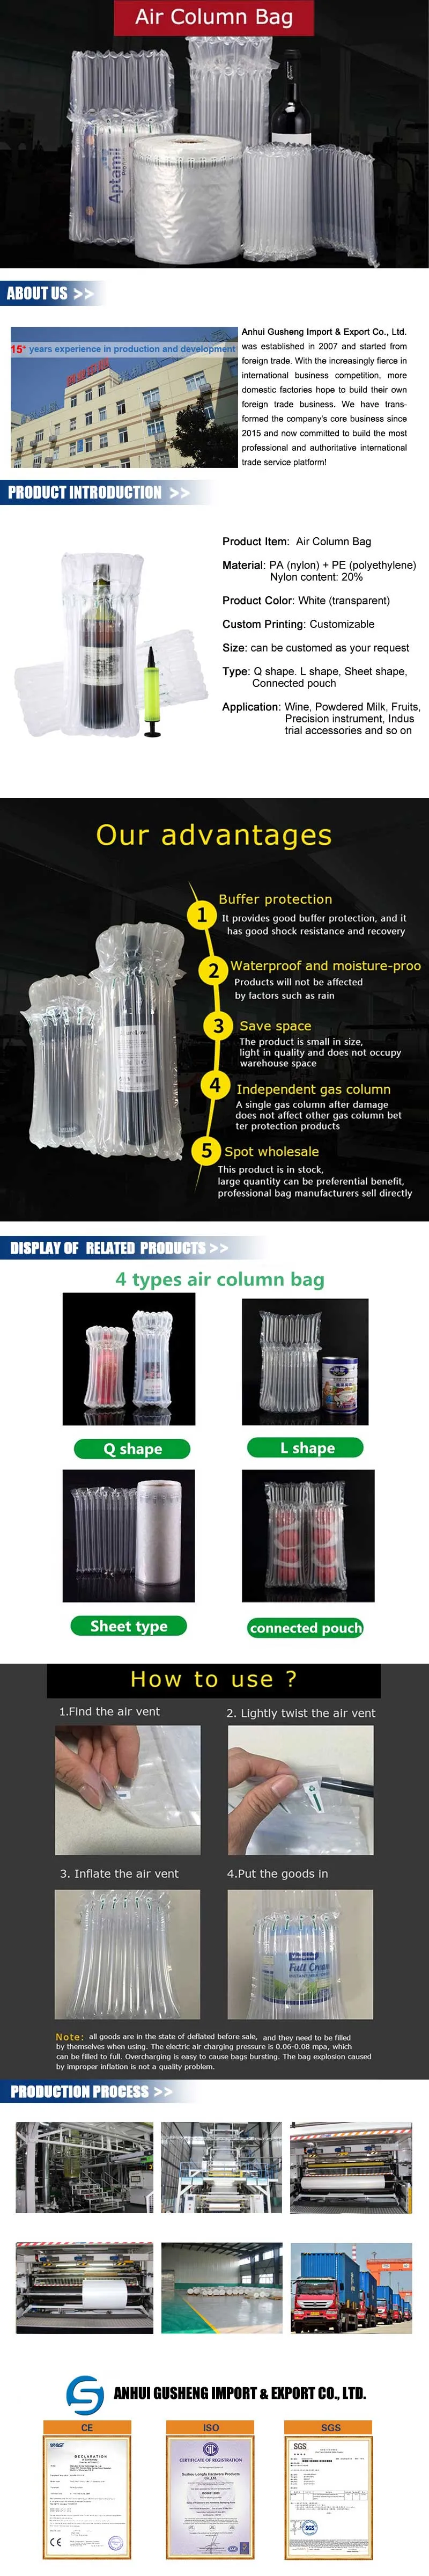 Manual Inhalator for Air Column Bag & Air Buffer Bag & Air Cushion Bag